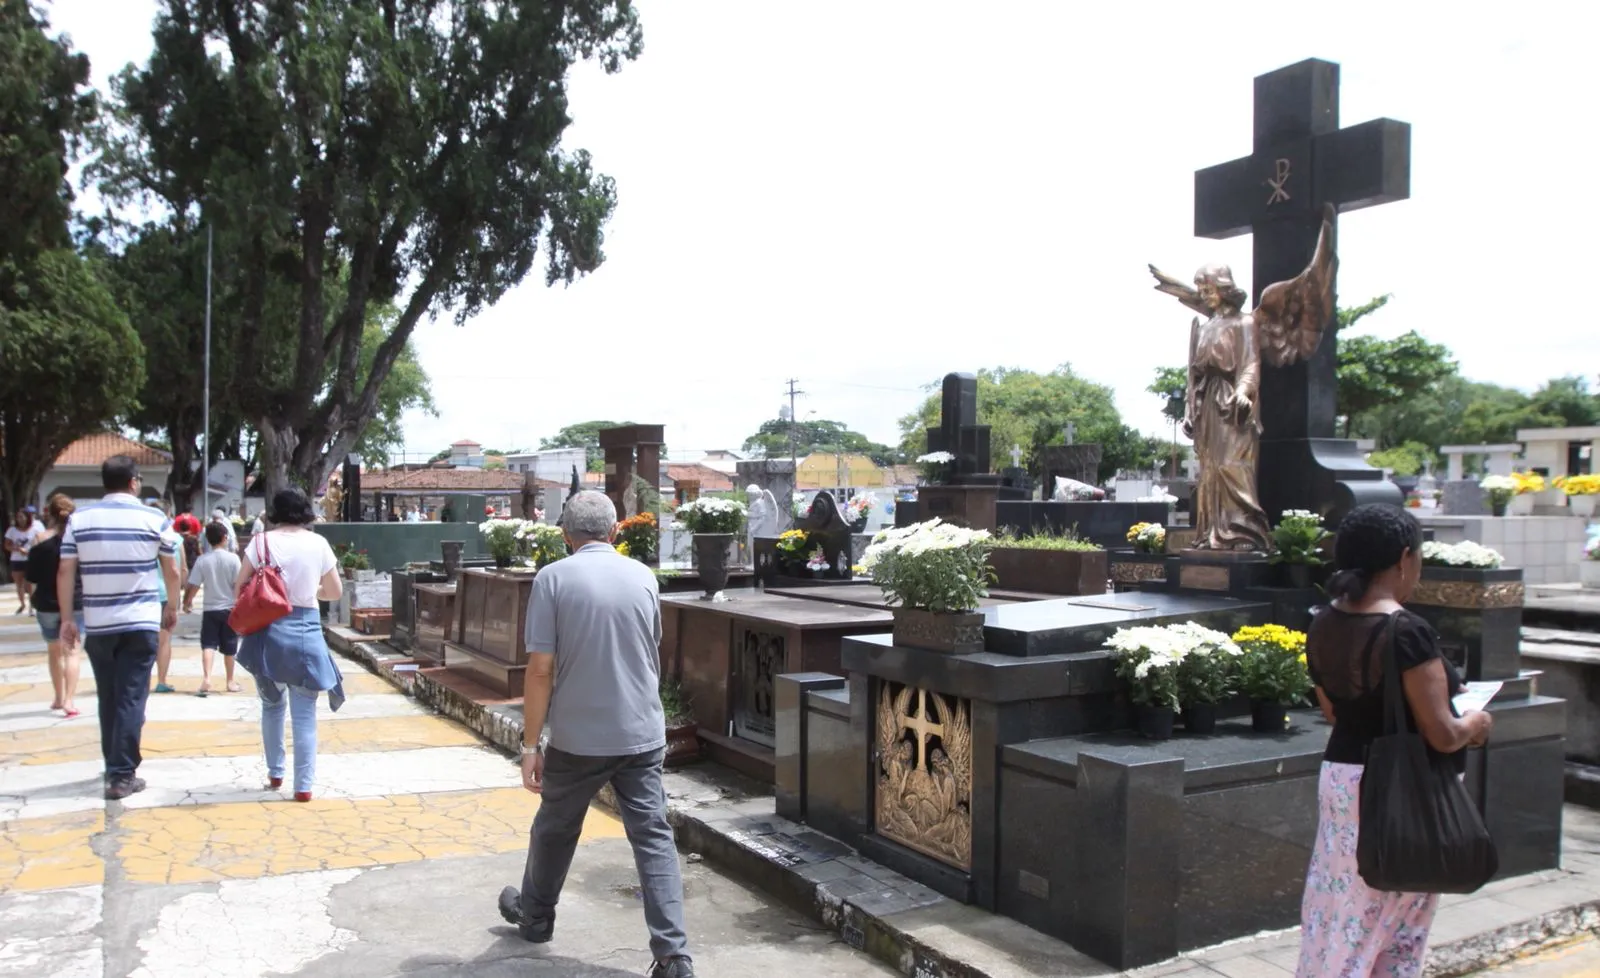 Cemitério municipal, no bairro Avareí, é um dos mais antigos da região